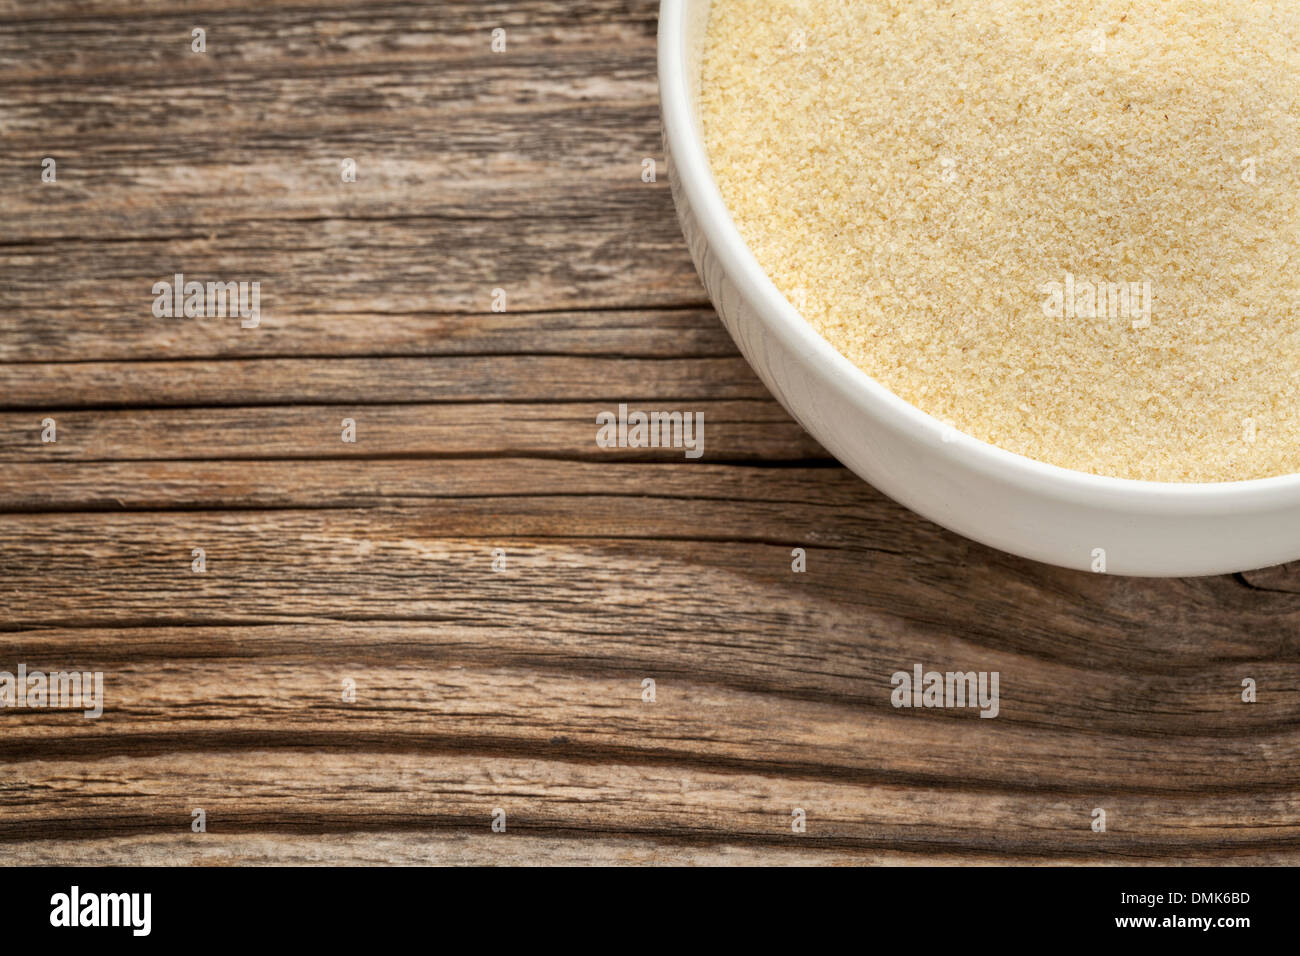 La semoule de farine de blé - un bol en céramique blanche sur un bois à grain fin Banque D'Images